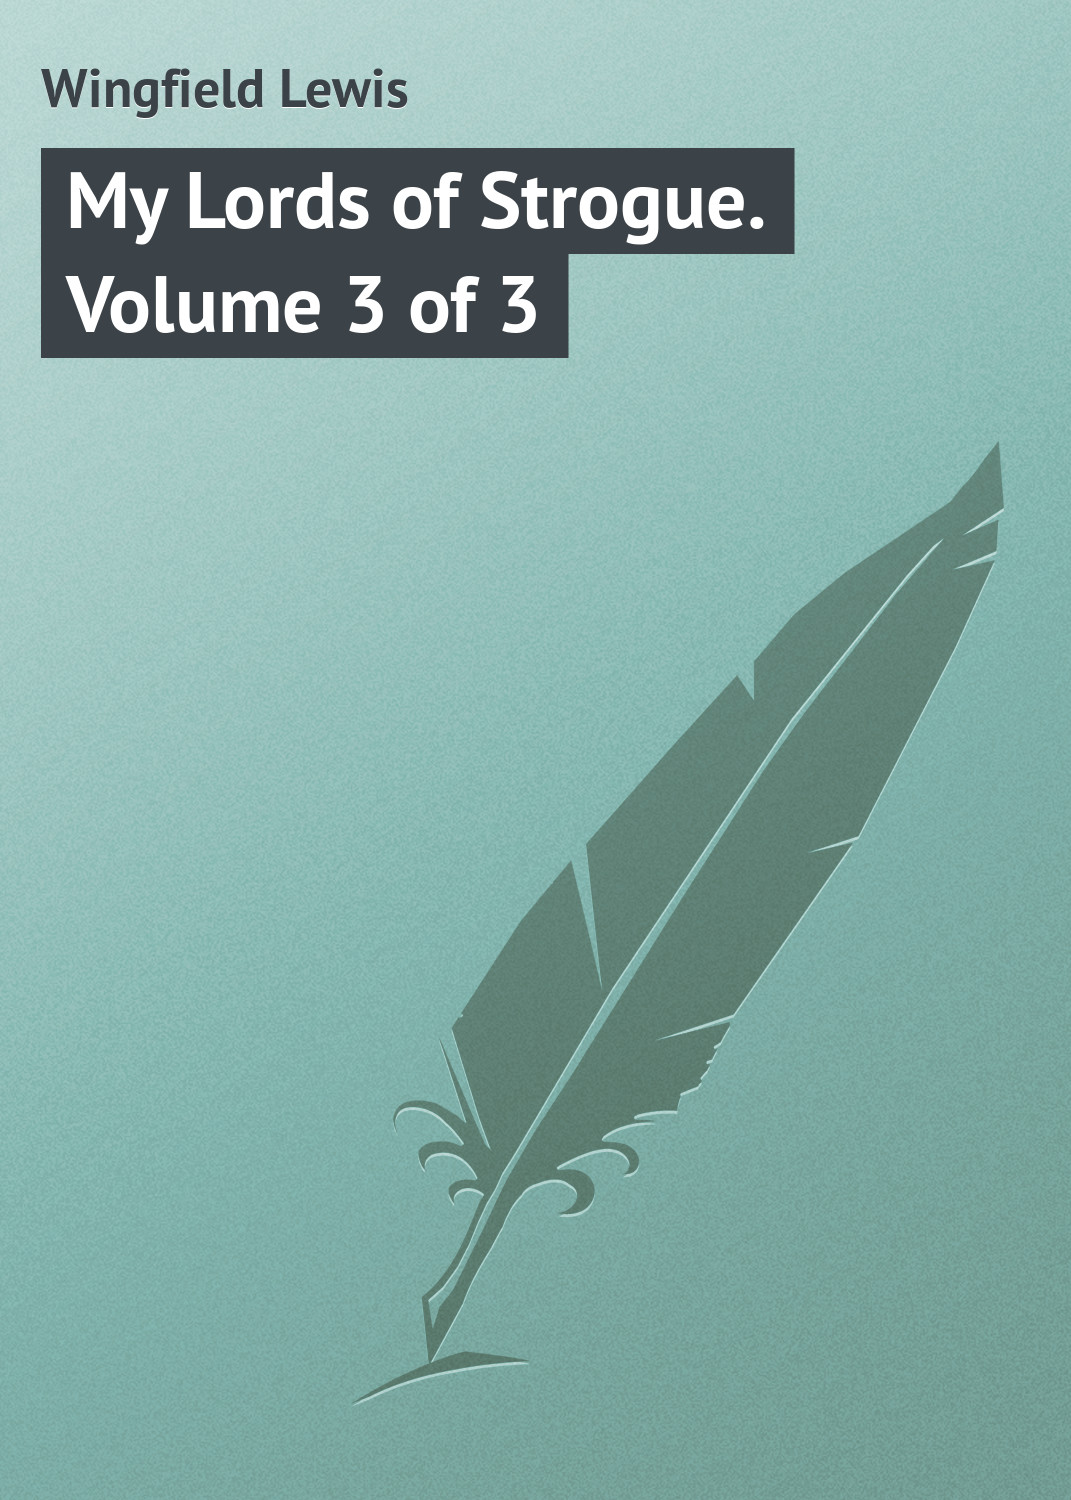 Книга My Lords of Strogue. Volume 3 of 3 из серии , созданная Lewis Wingfield, может относится к жанру Зарубежная классика, Иностранные языки. Стоимость электронной книги My Lords of Strogue. Volume 3 of 3 с идентификатором 23146243 составляет 5.99 руб.